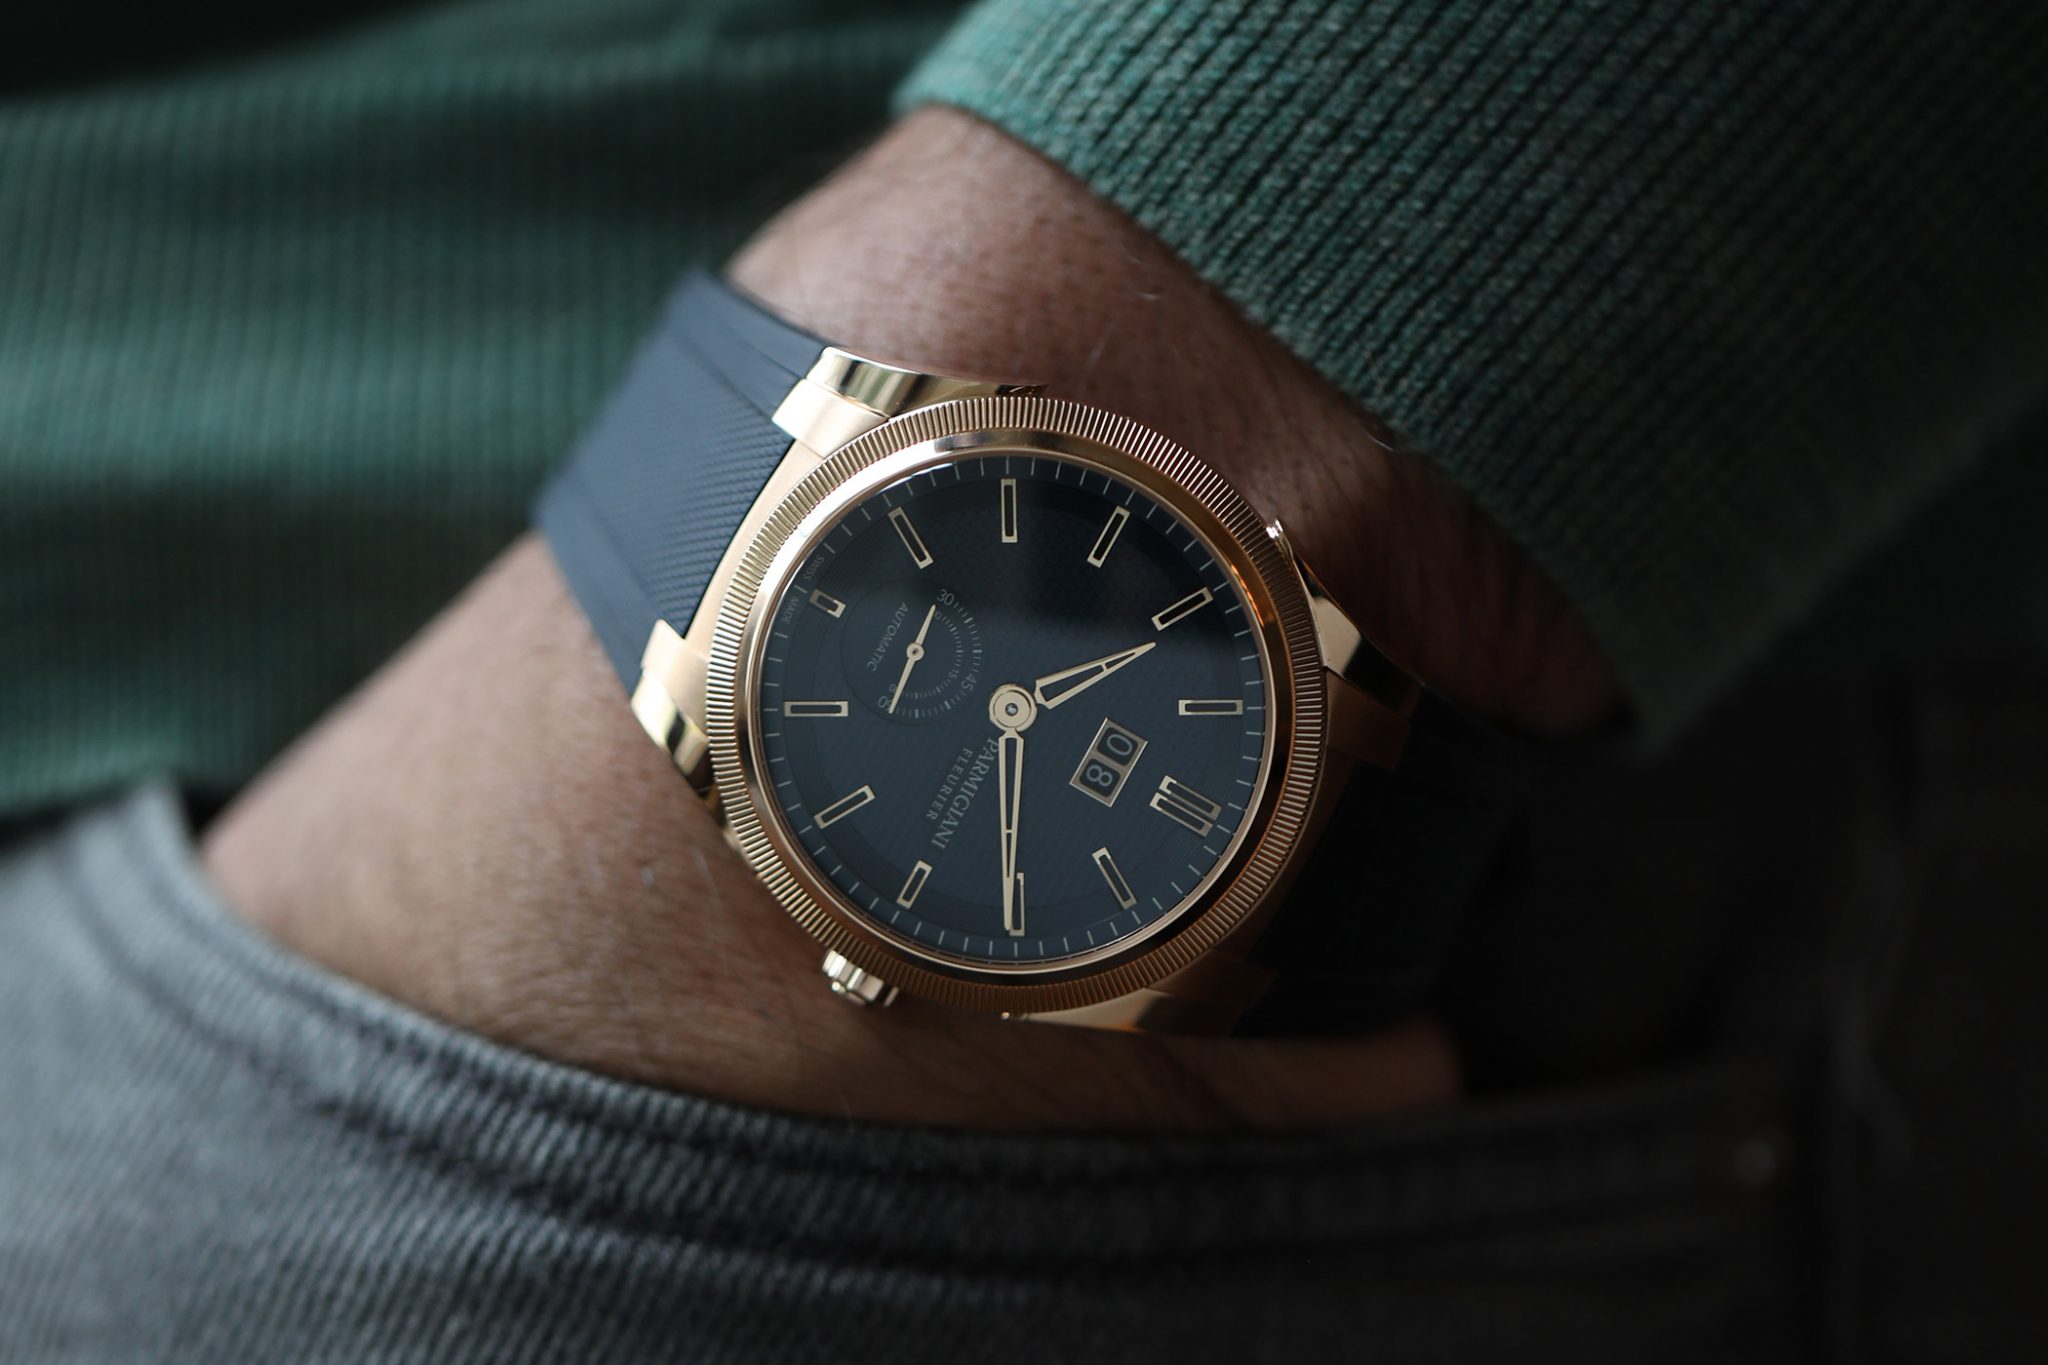 Parmigiani Fleurier Tonda GT strap on wrist gold